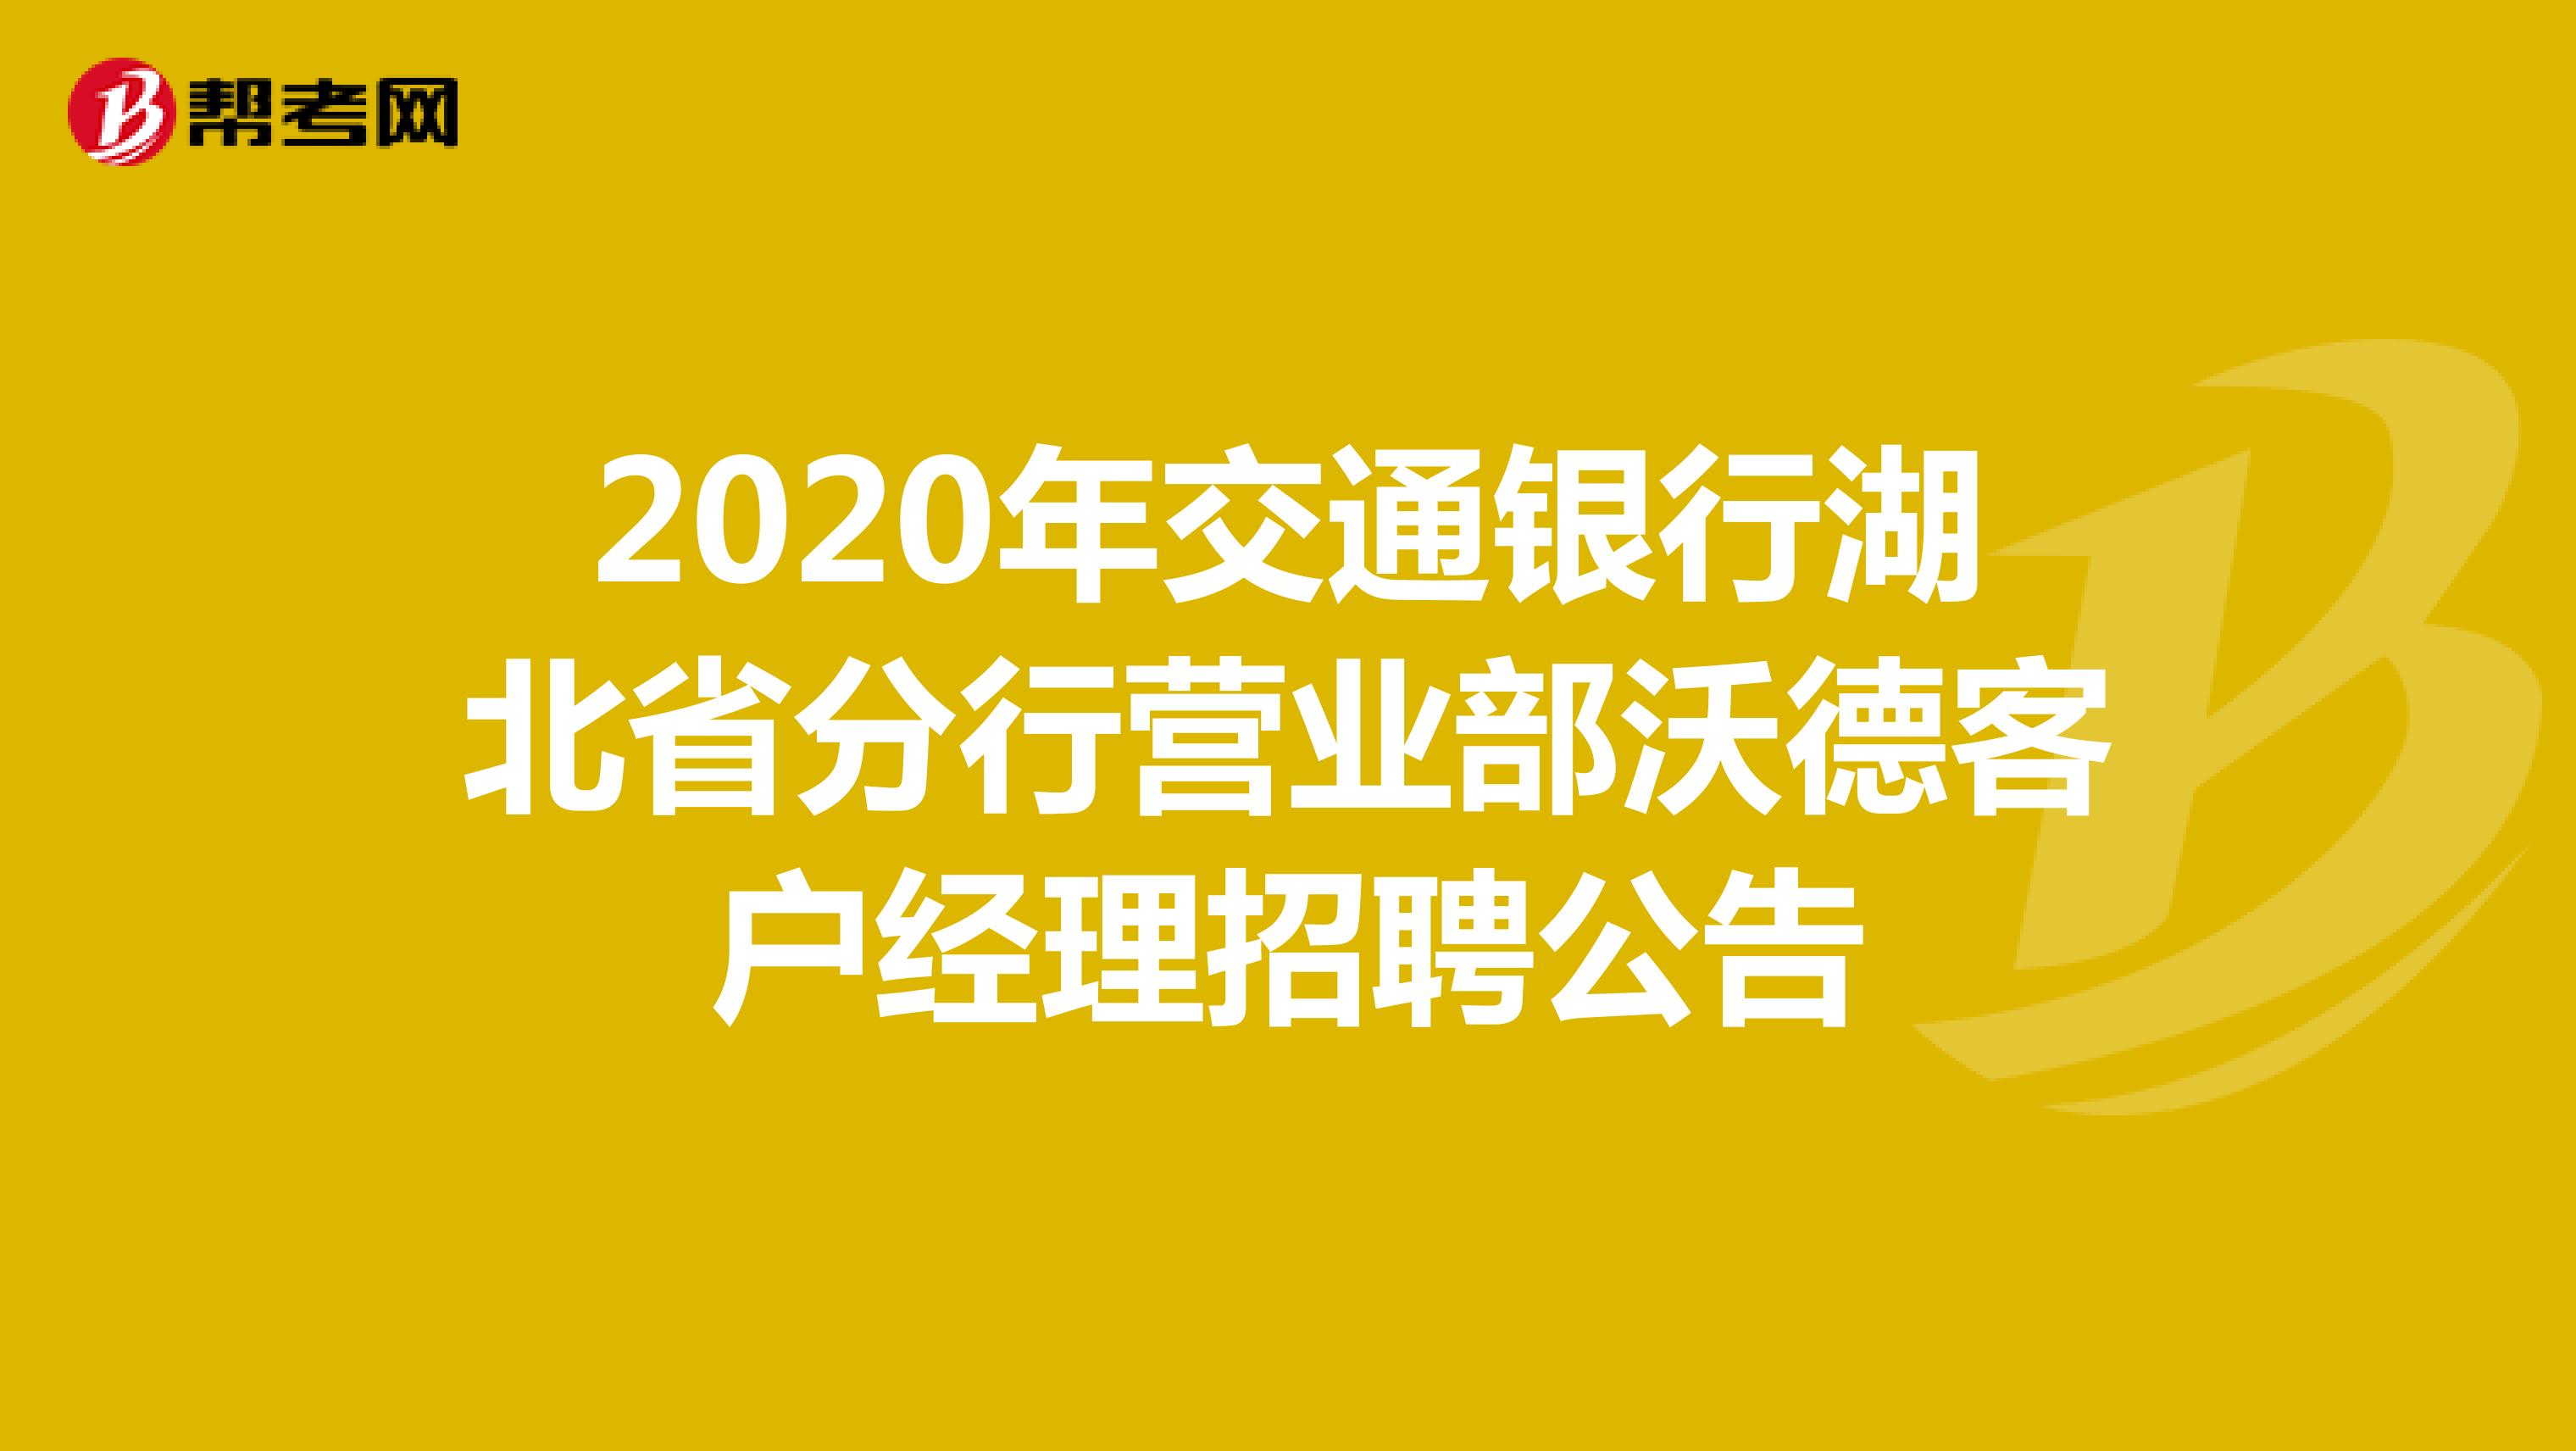 交通银行2020年湖北省分行营业部沃德客户经理招聘公告